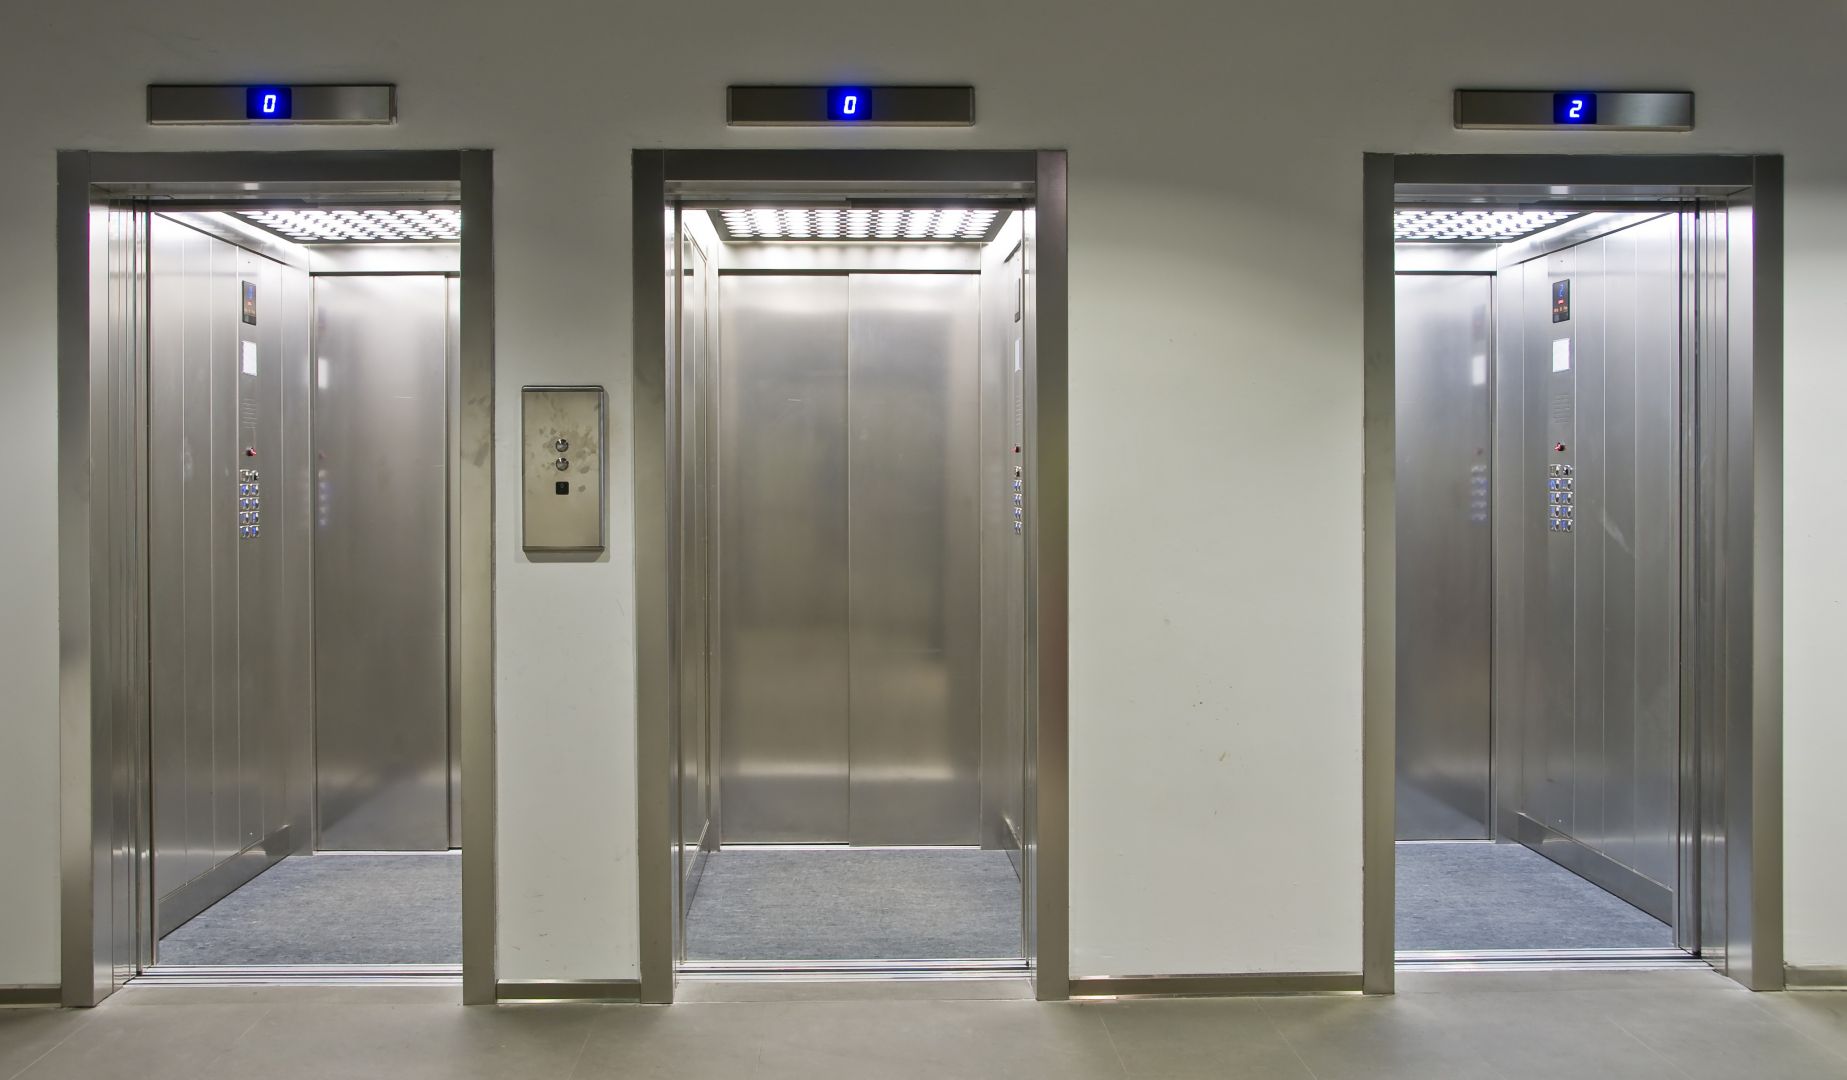 Zakázka na vestavba výtahu (Výtahy a servis) - Liberec